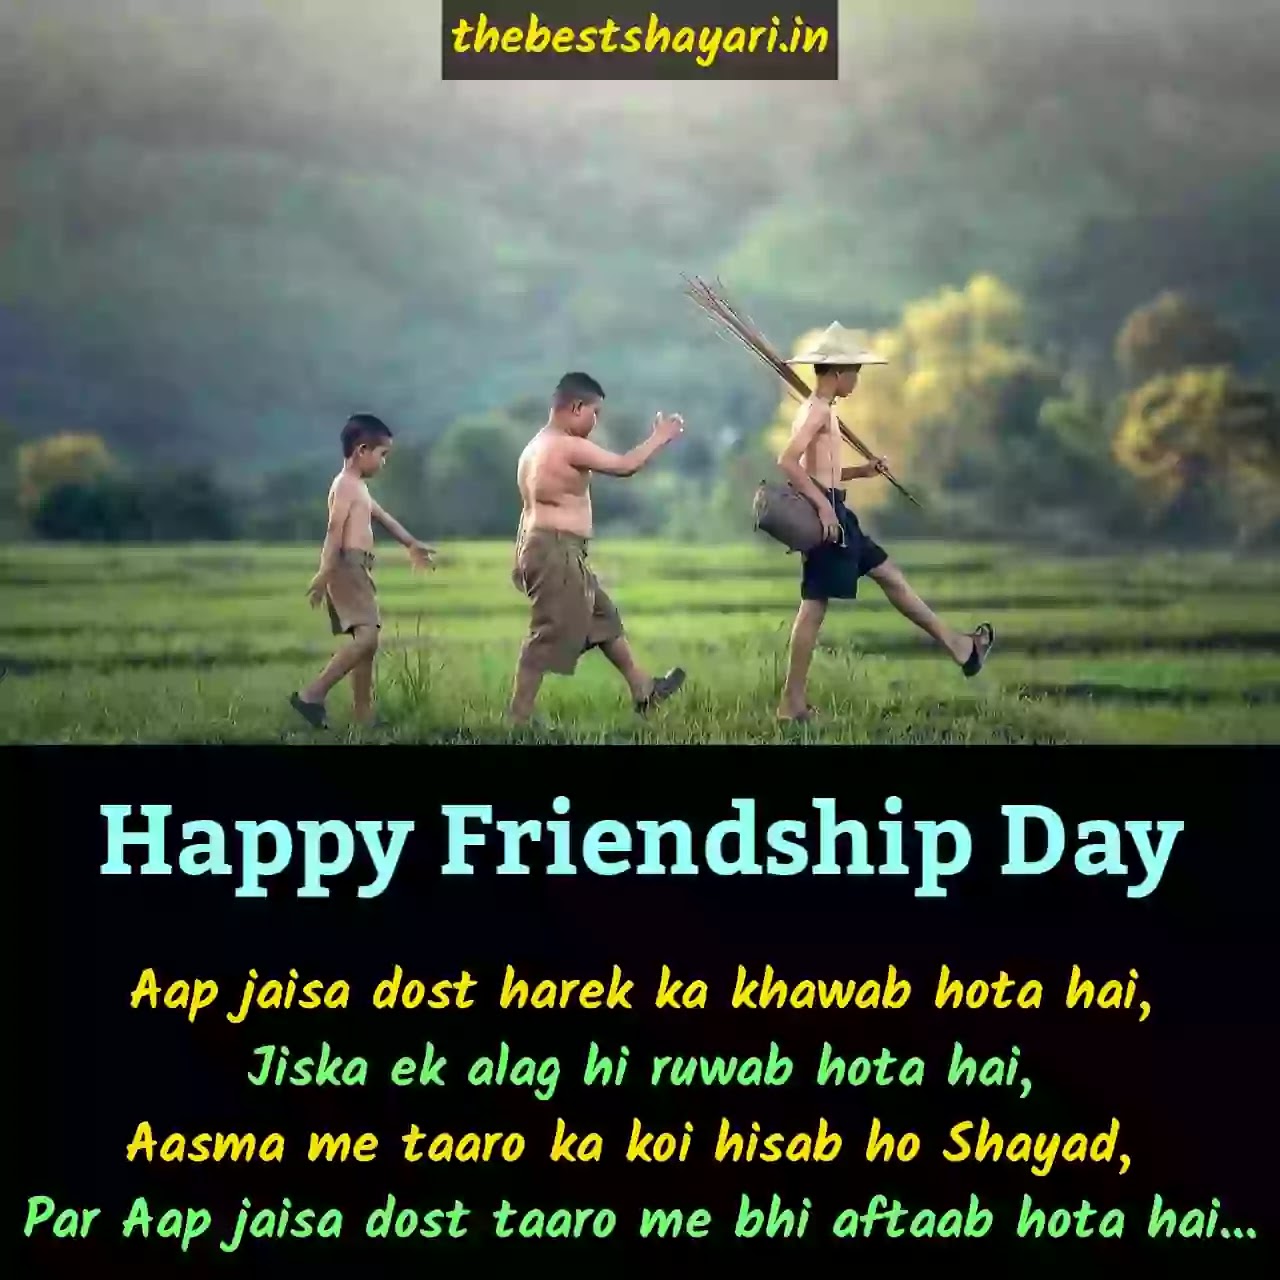 Friendship Day best shayari in Hindi